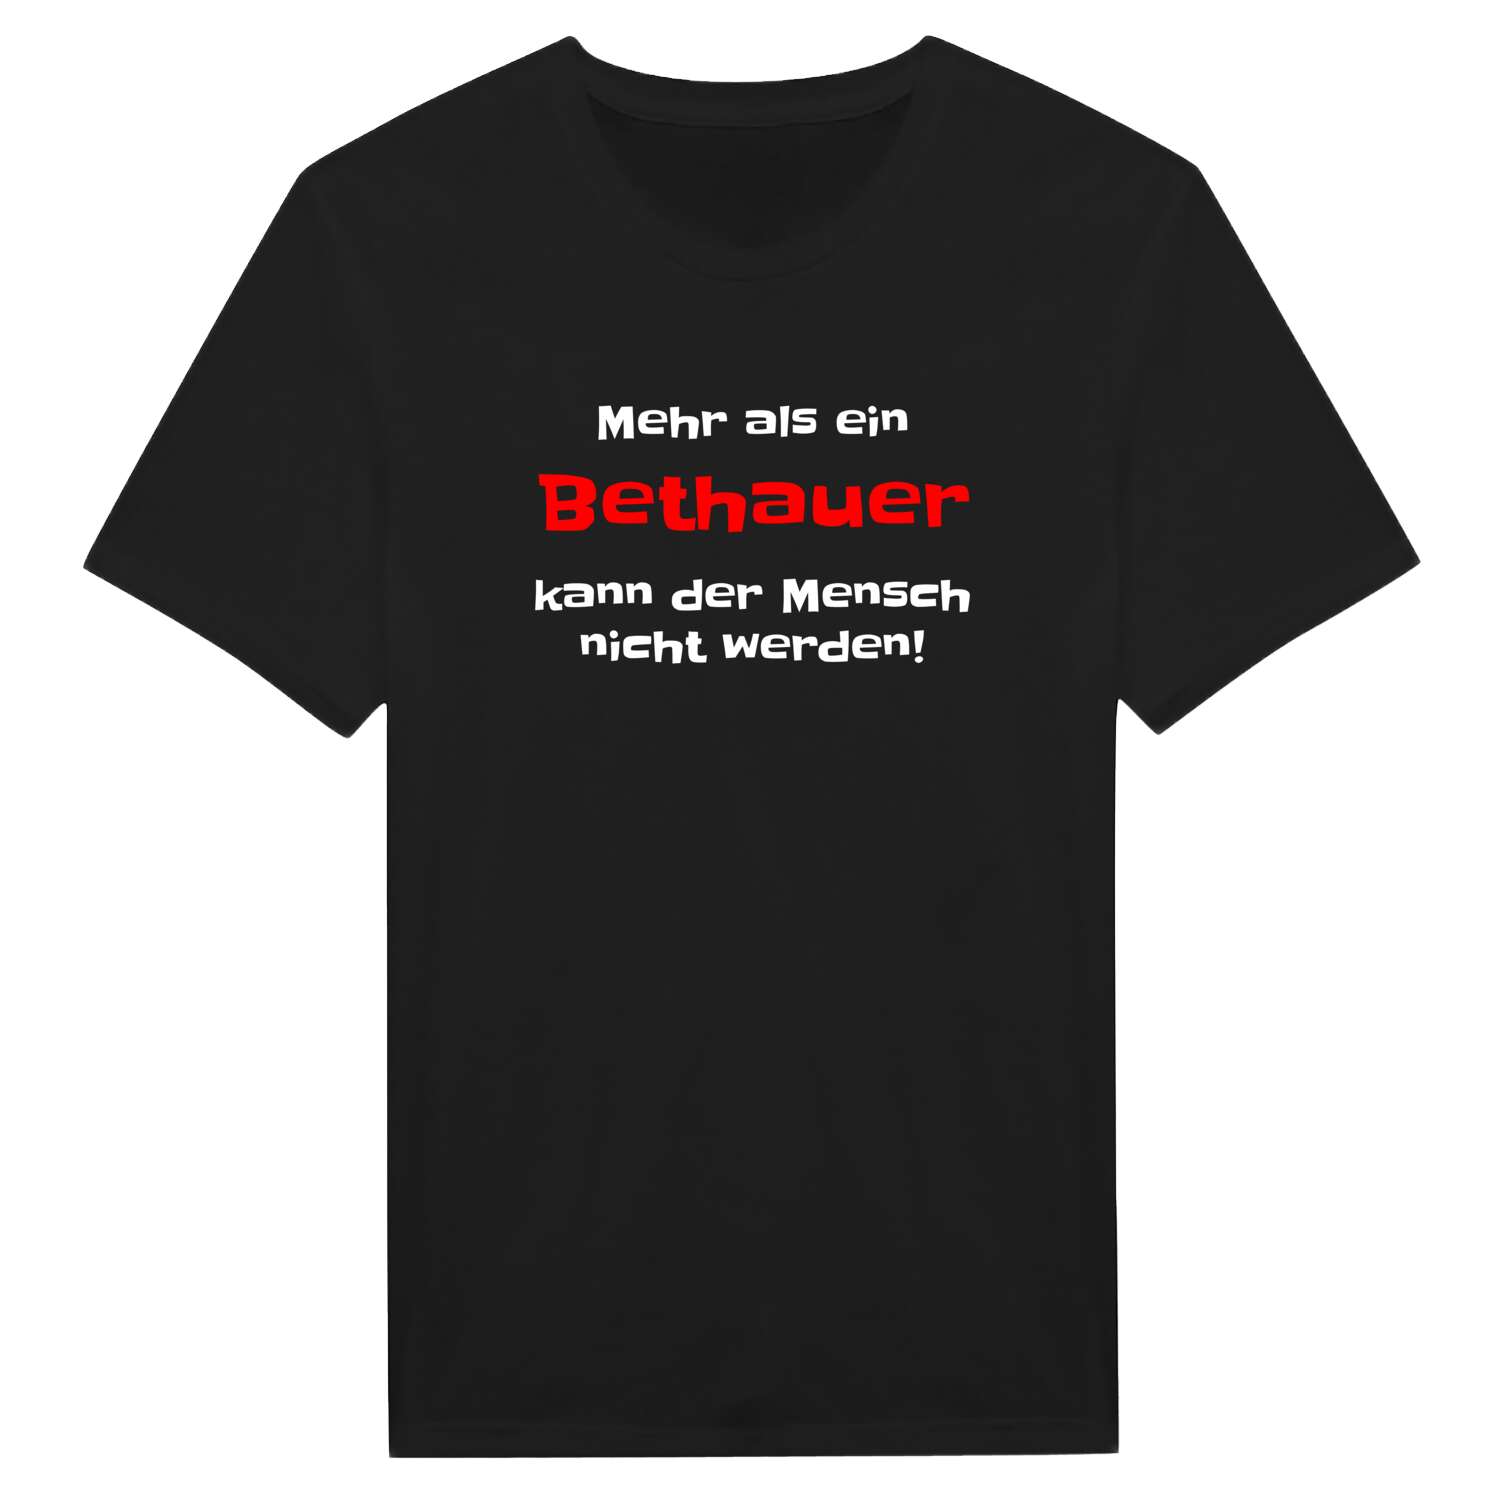 Bethau T-Shirt »Mehr als ein«